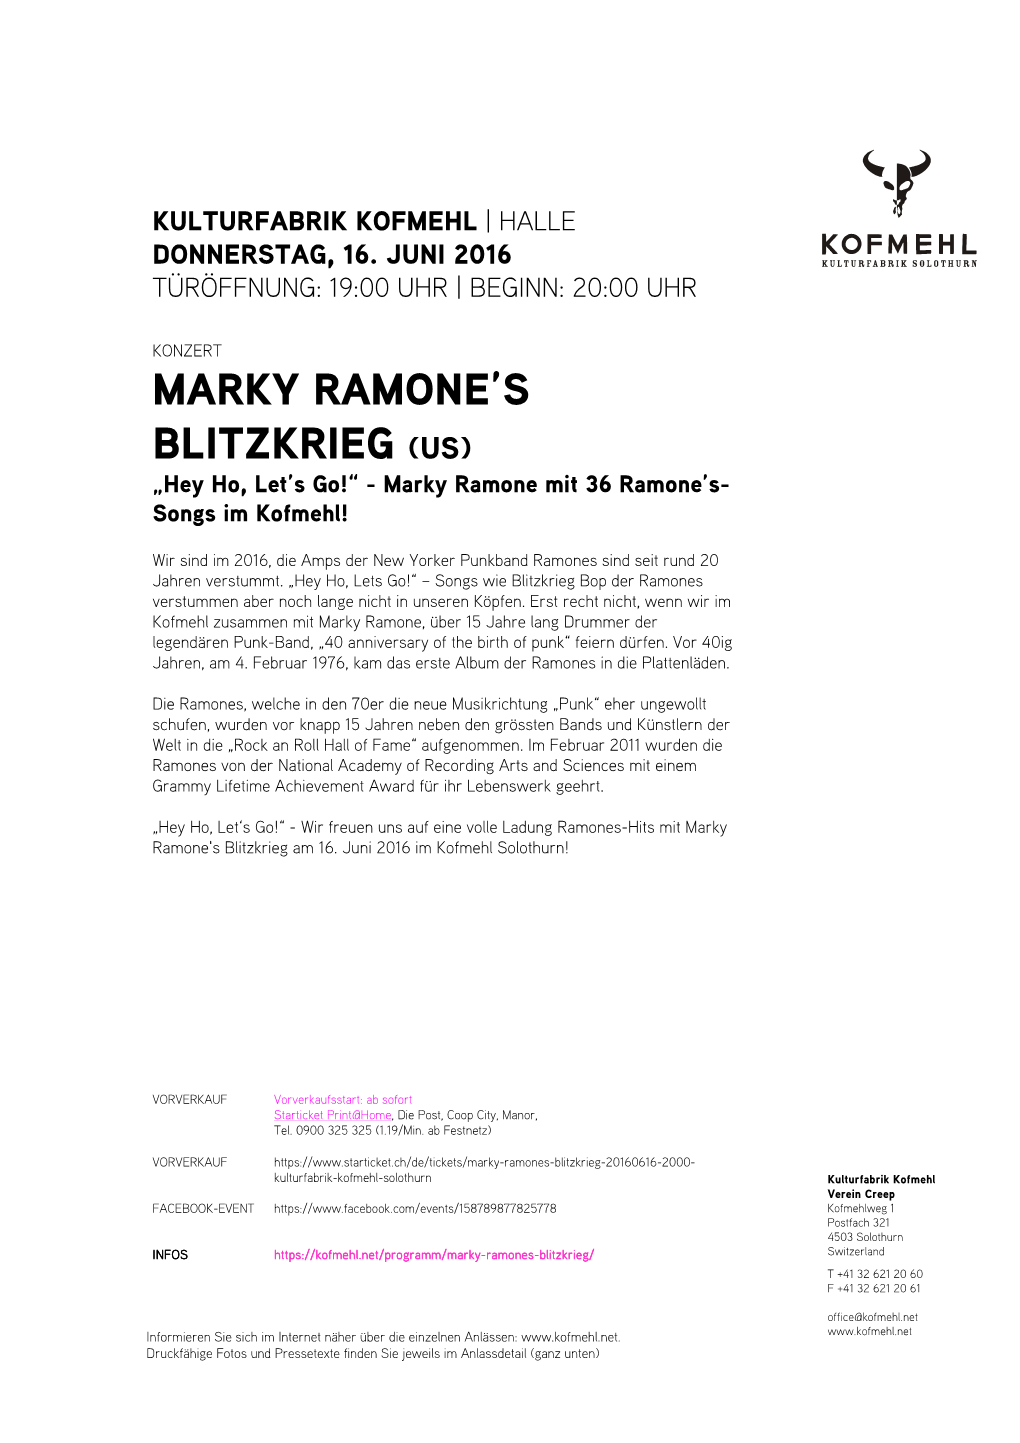 Marky Ramone's Blitzkrieg (Us)